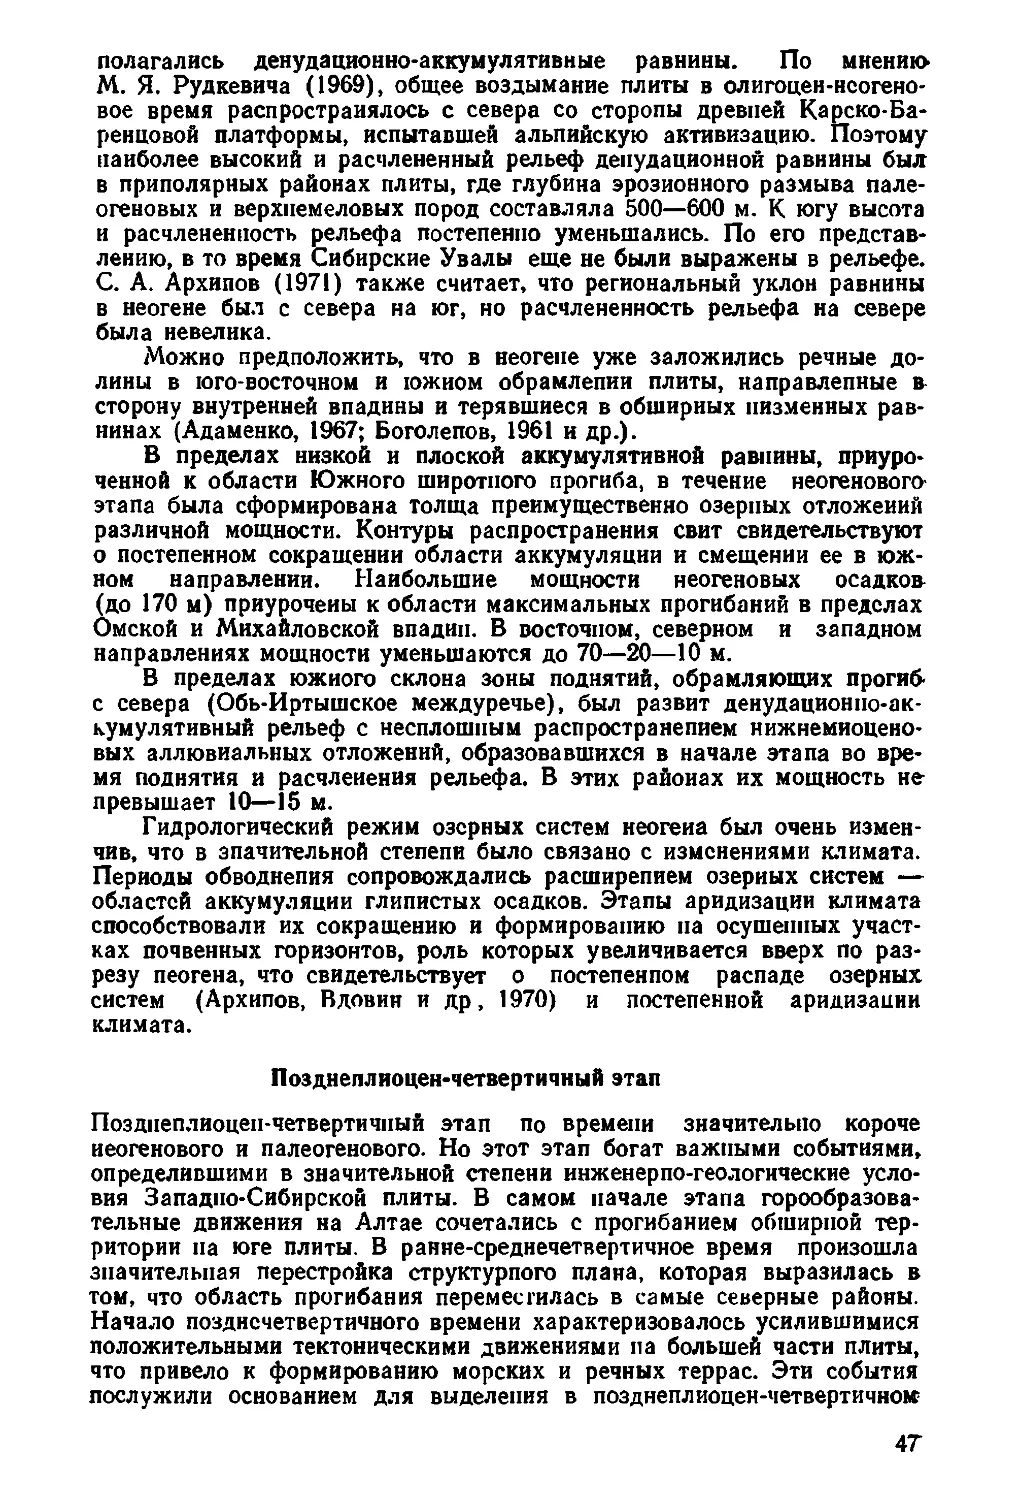 Позднеплиоцен-четвертичный этап. Сергеев Е.М., Ершова С.Б., Баулин В.В., 47